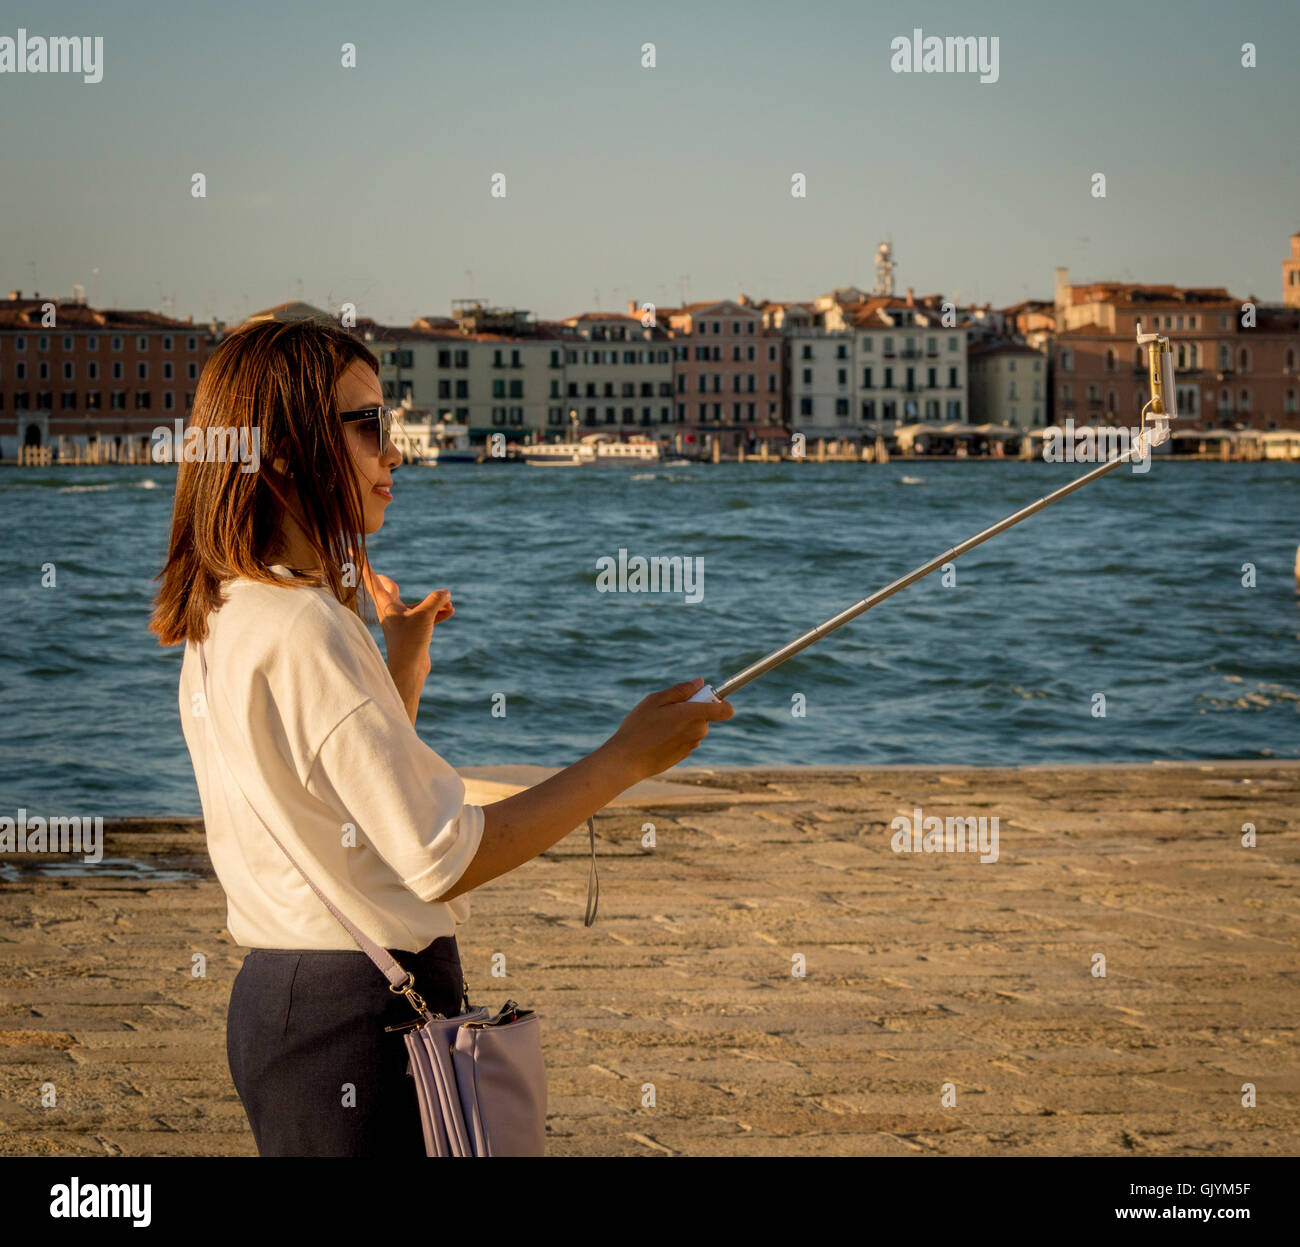 Les jeunes femelles adultes asiatiques de prendre un touriste, à l'aide d'un selfies stick selfies ; rendre le signe V avec ses doigts. Venise, Italie. Banque D'Images